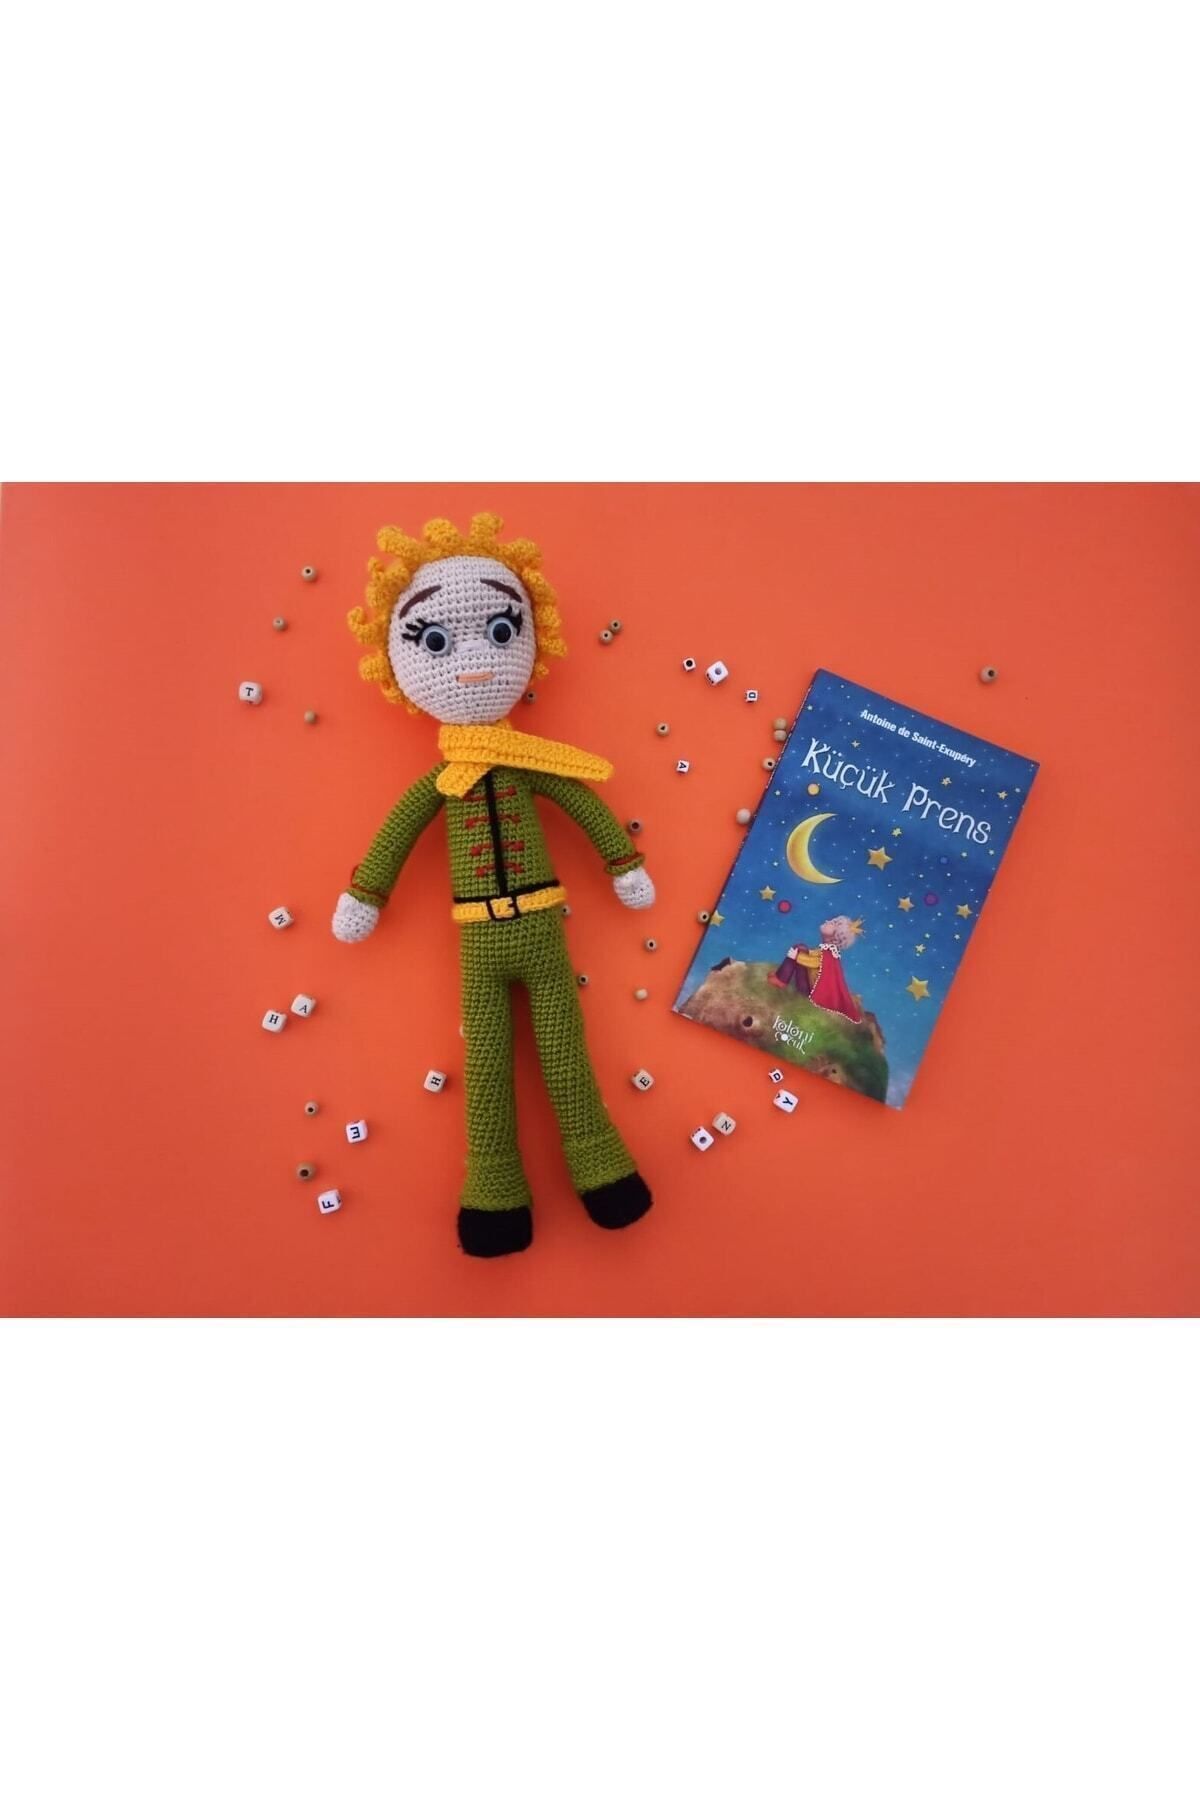 S&k Collection Küçük Prens 2'liset ; Kitap Ve Bebek Amigurumi Örgü Oyuncak Peluş